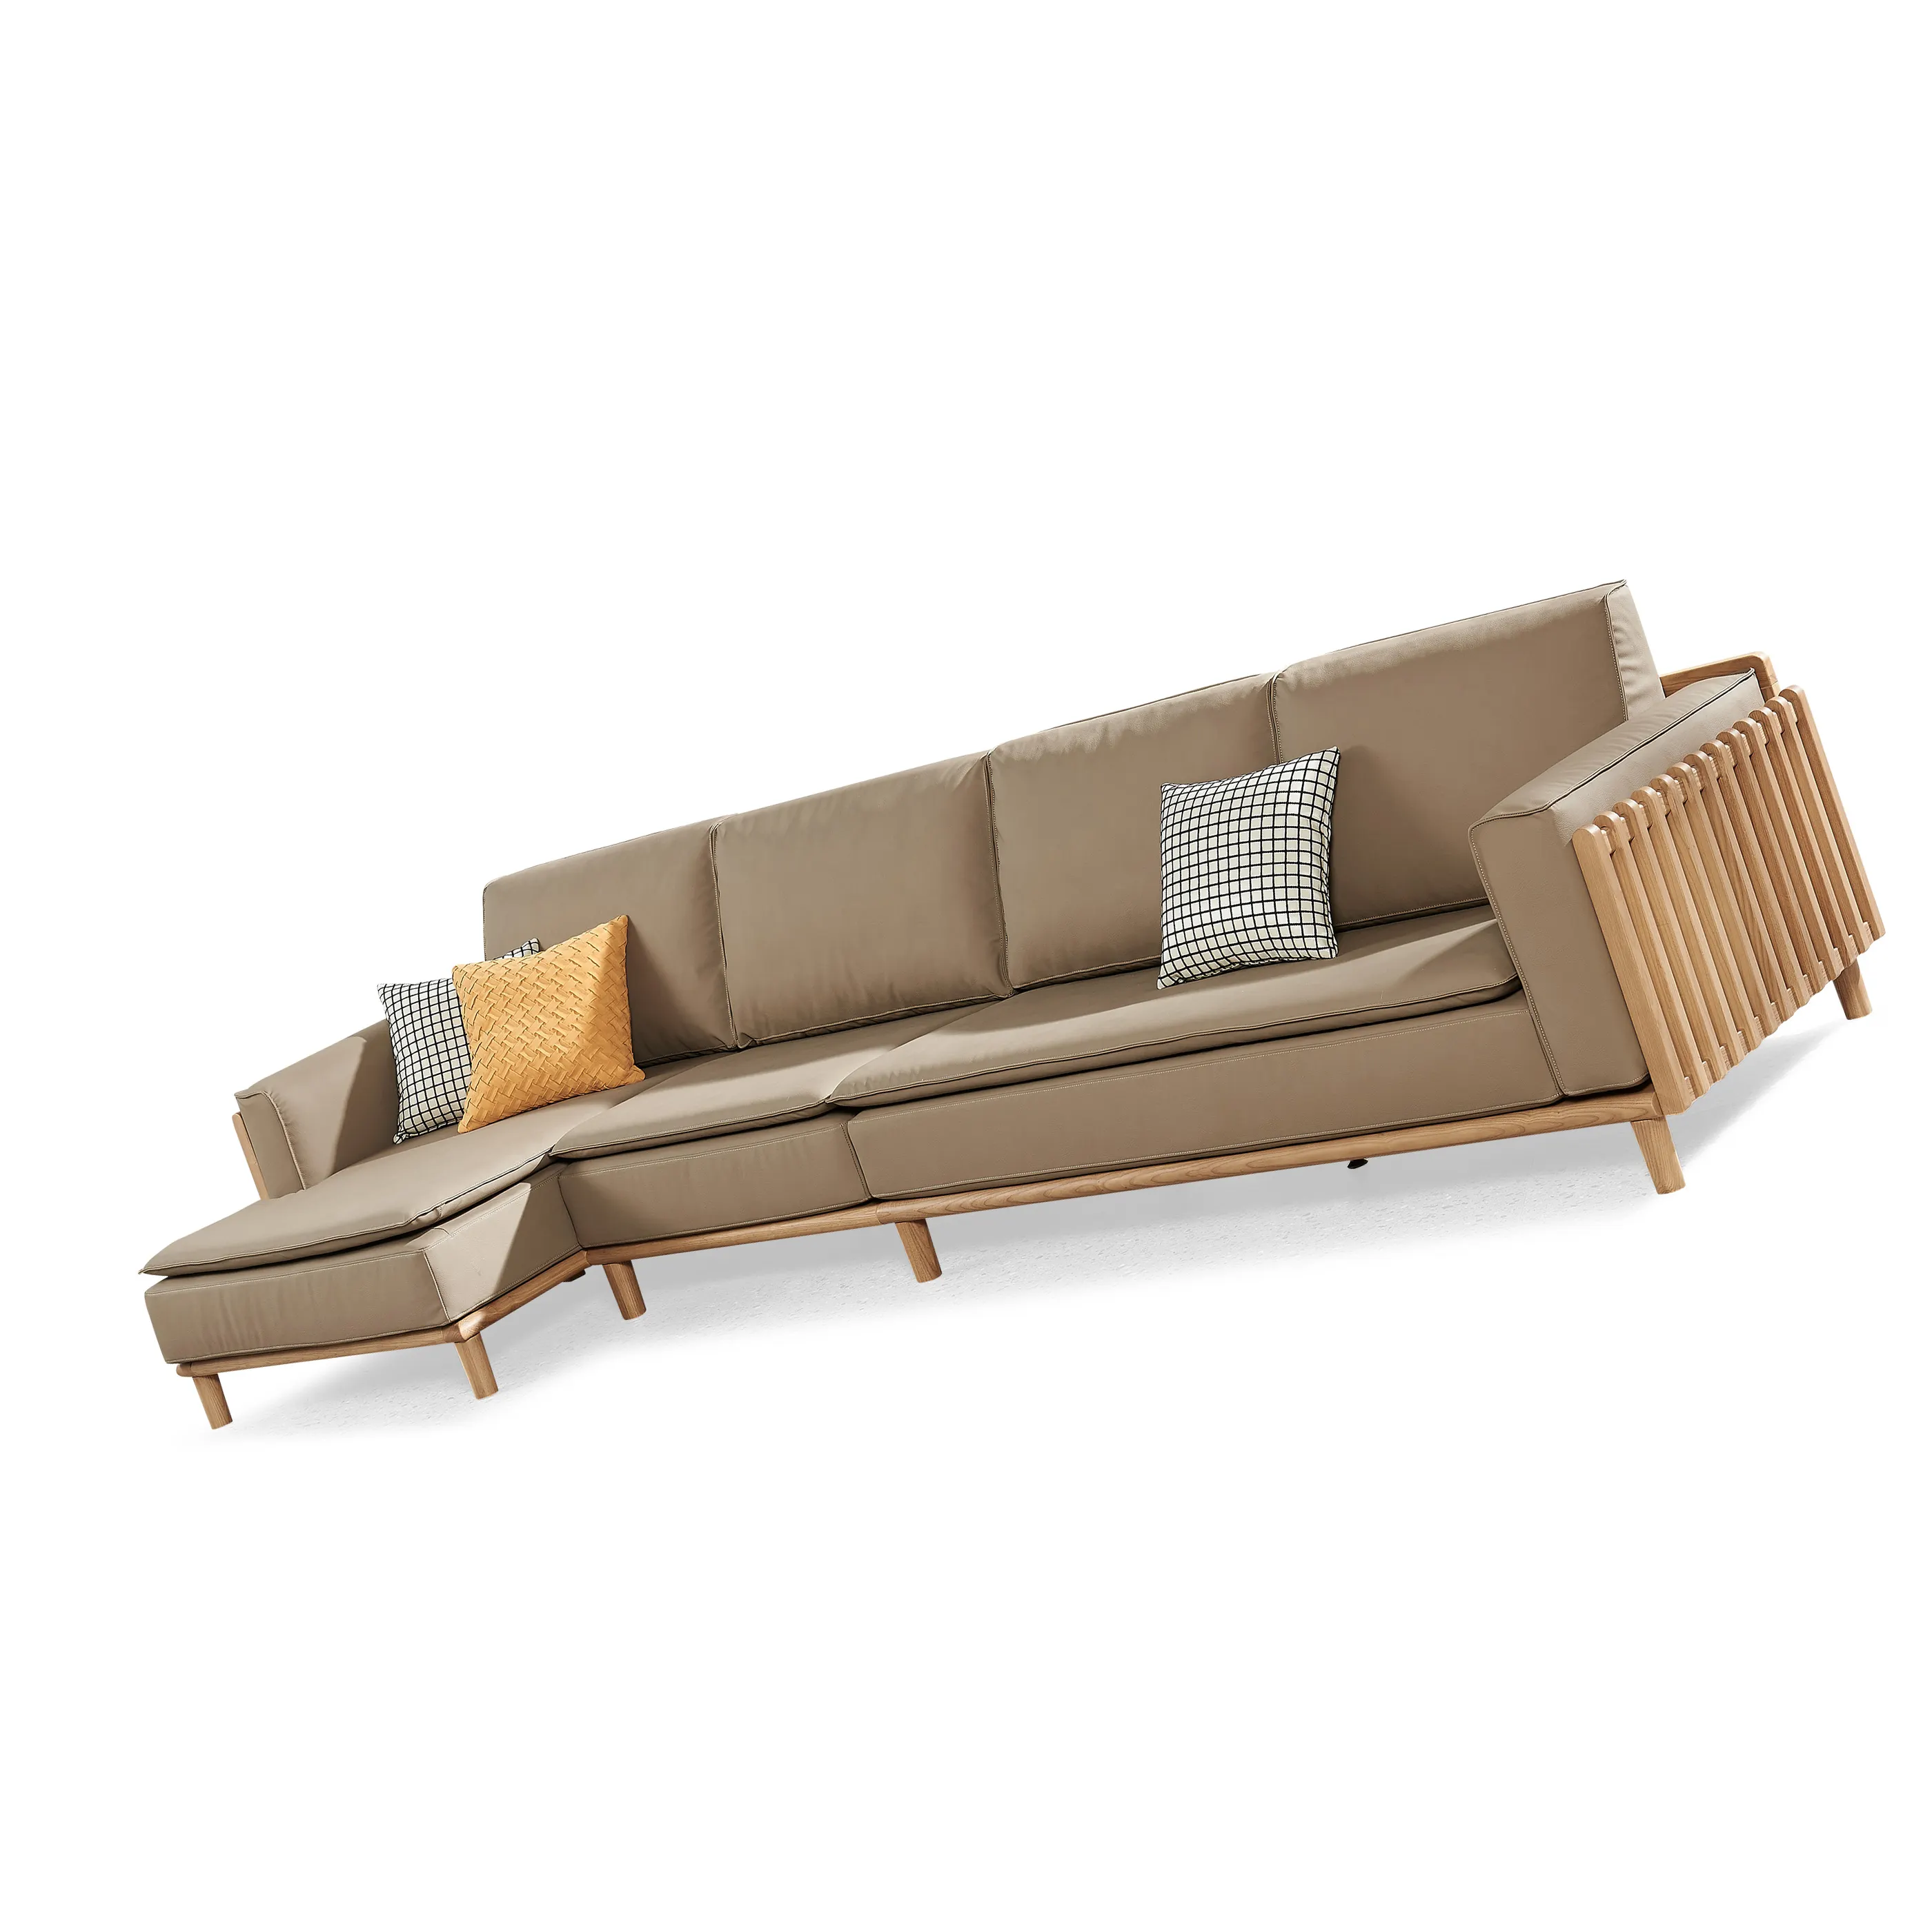 L-Form Massiv Eschenholz Rahmen Wohnzimmer Sofas mit Leder kissen Sitze einzigartige Zaun Armlehne Design Holz möbel Sets